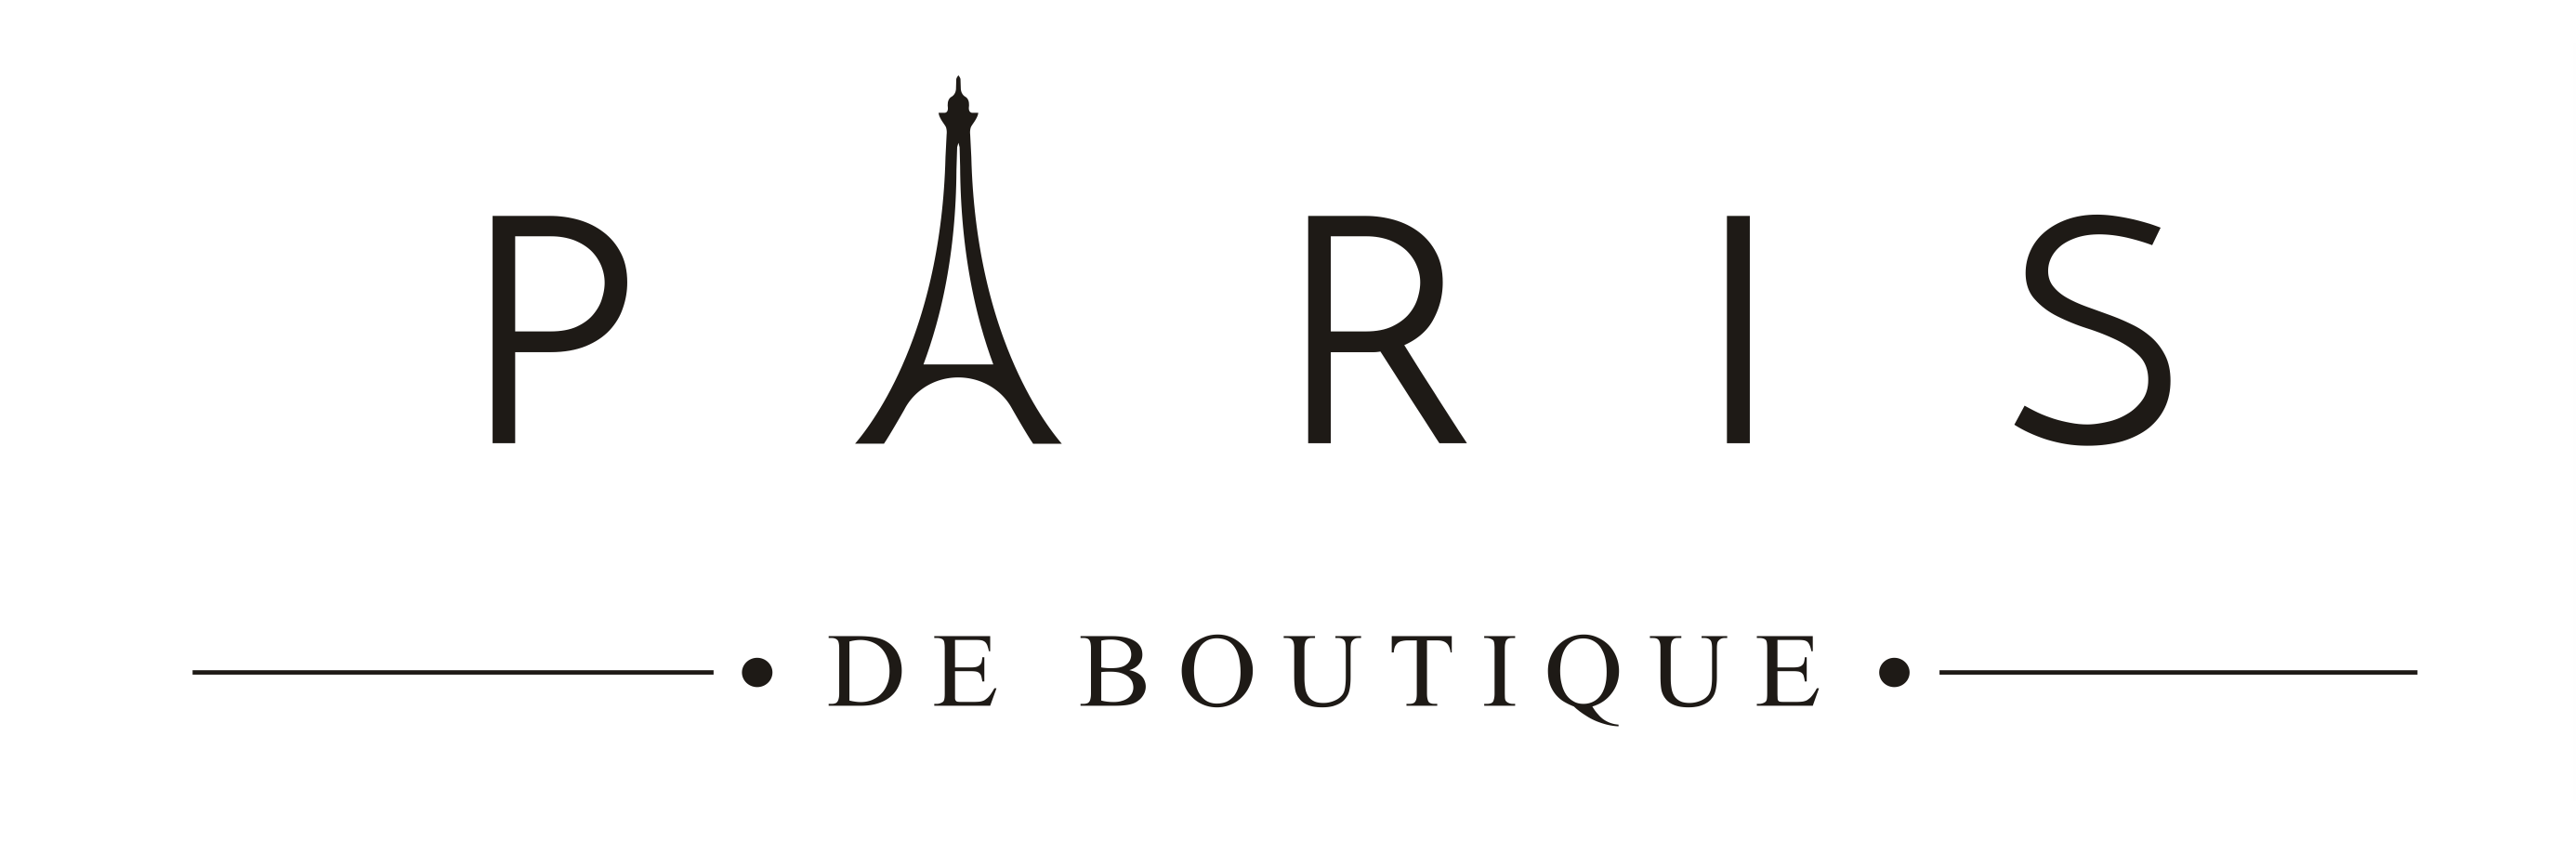 PARIS DE BOUTIQUE – Paris De Boutique